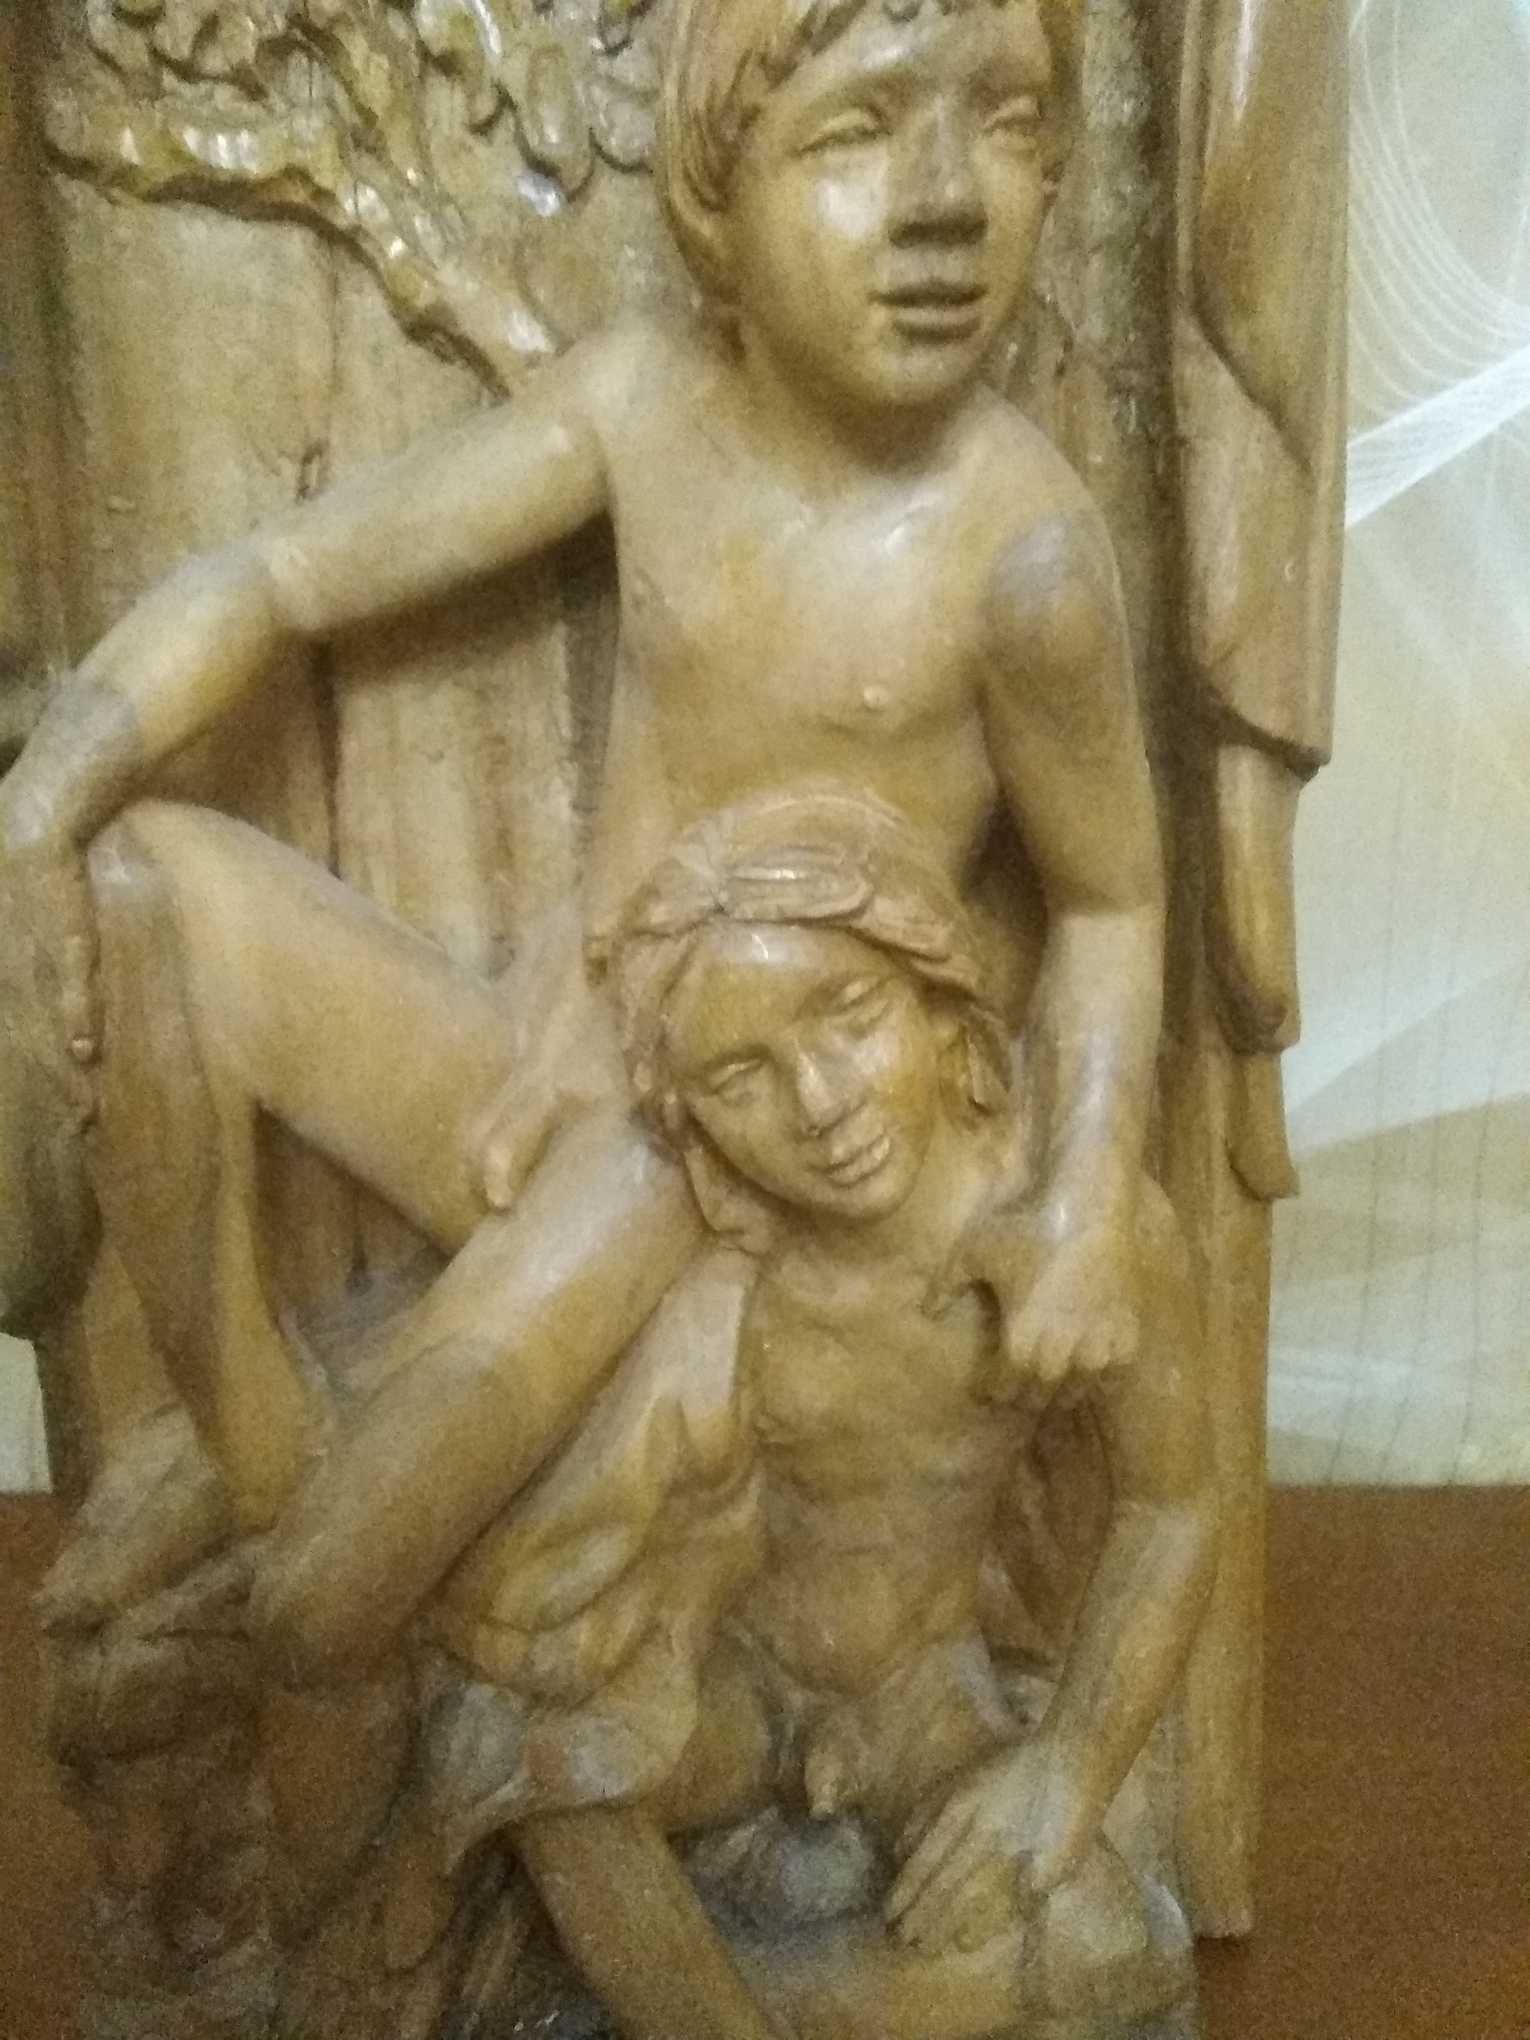 Drewniana rzeźba figury chłopców LGBT